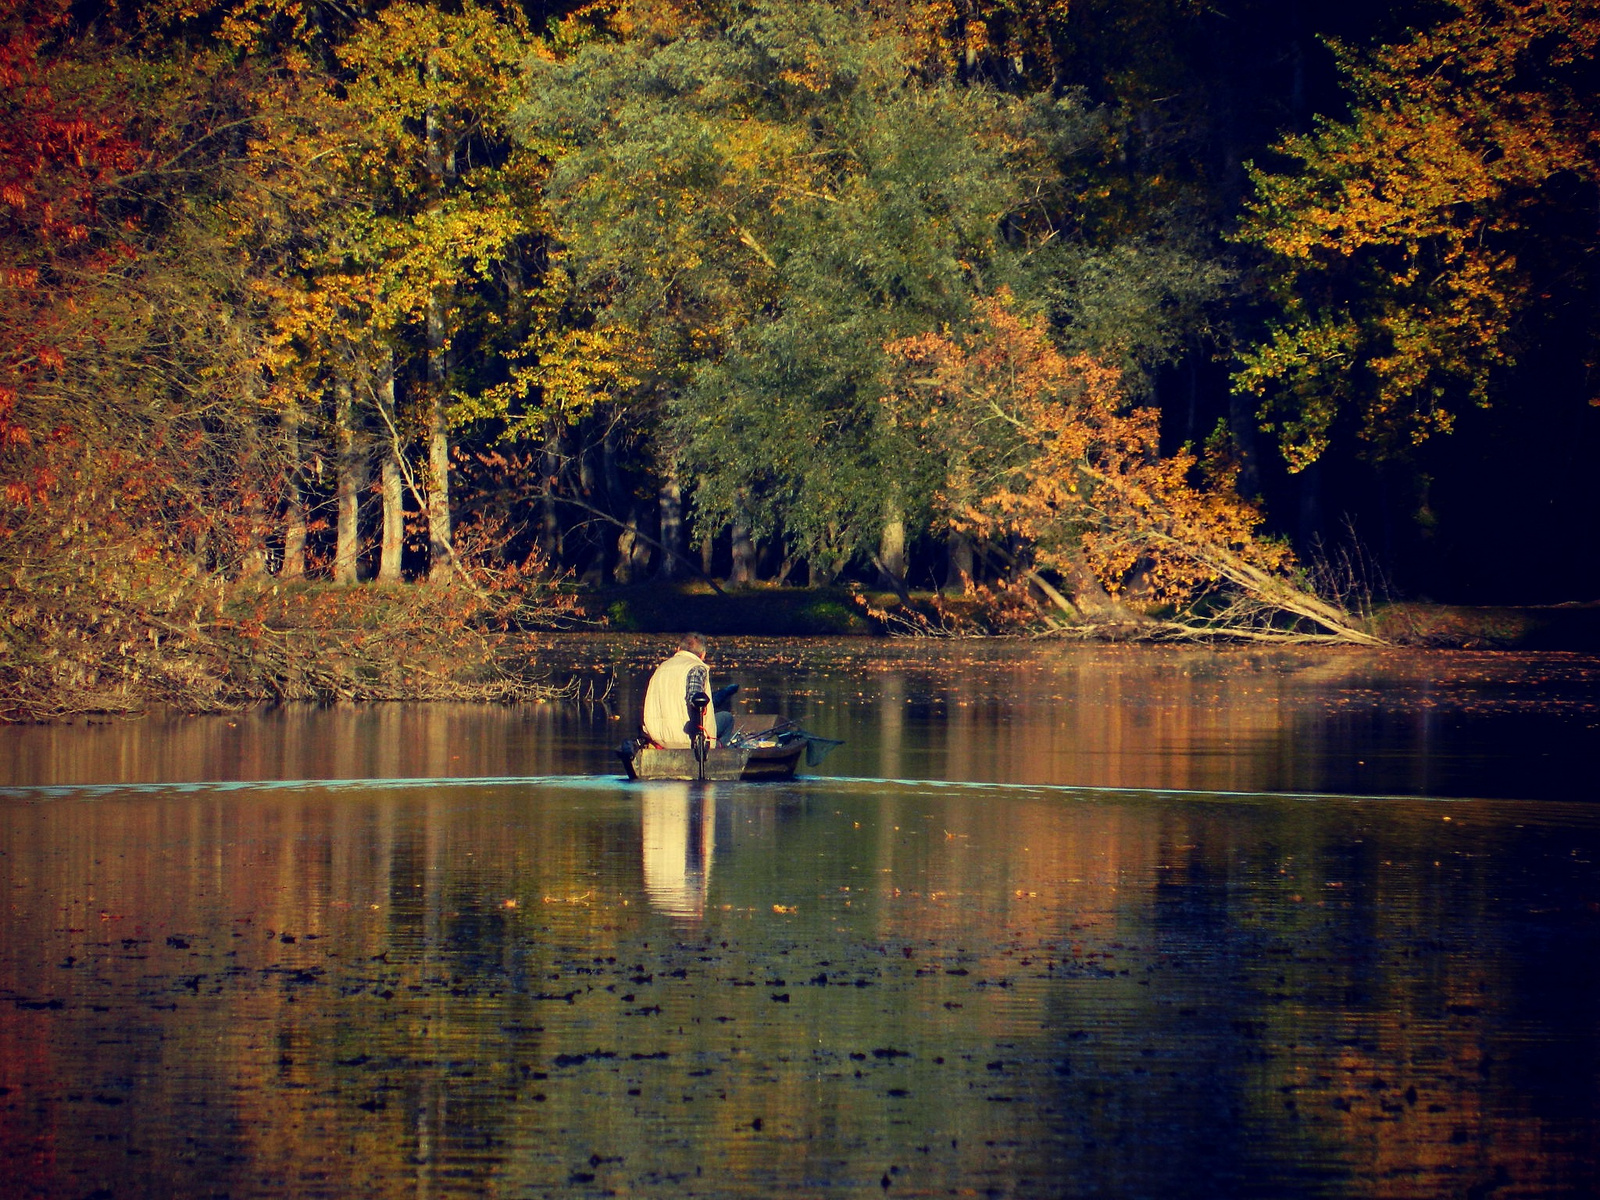 októberi kép novemberben :-) avagy majdnem "Sztüx folyó" :-)